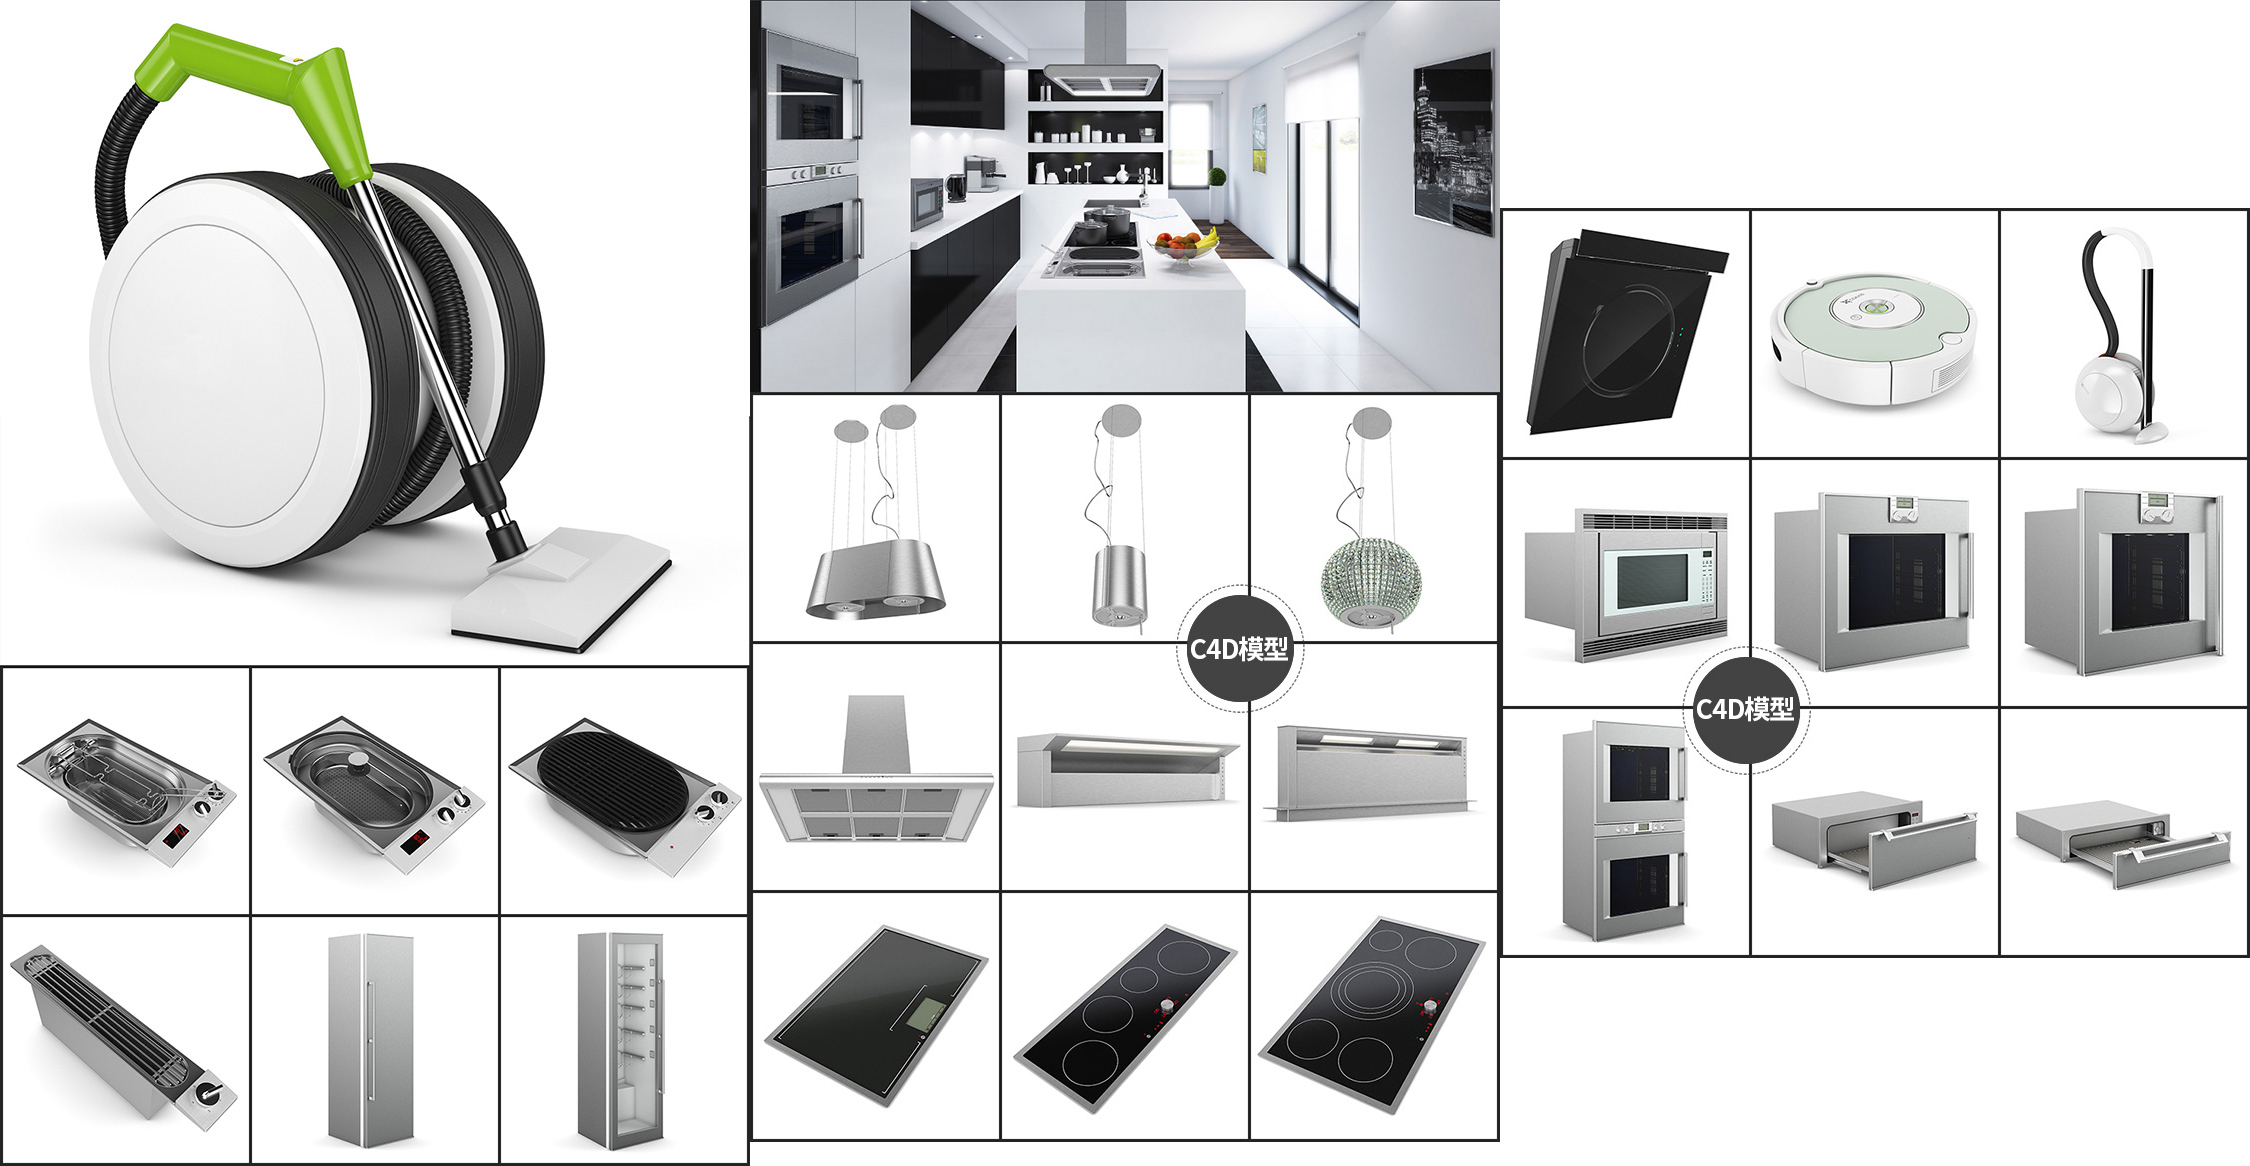 C4D模型-25套厨房电器用具模型合集下载